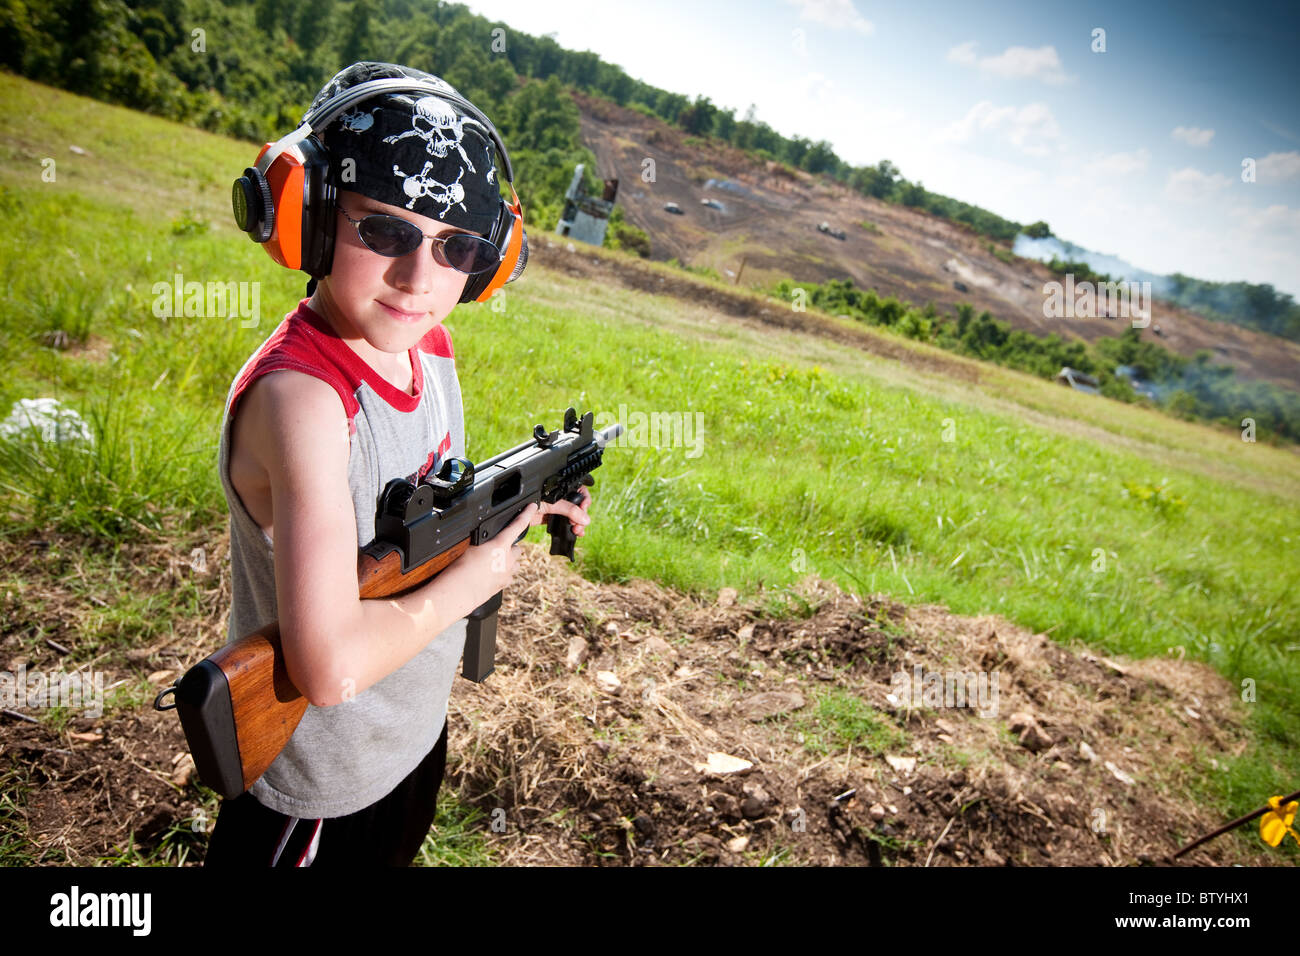 Un jeune garçon tire une mitrailleuse à la mitrailleuse parti à wyandotte, Michigan, USA Banque D'Images